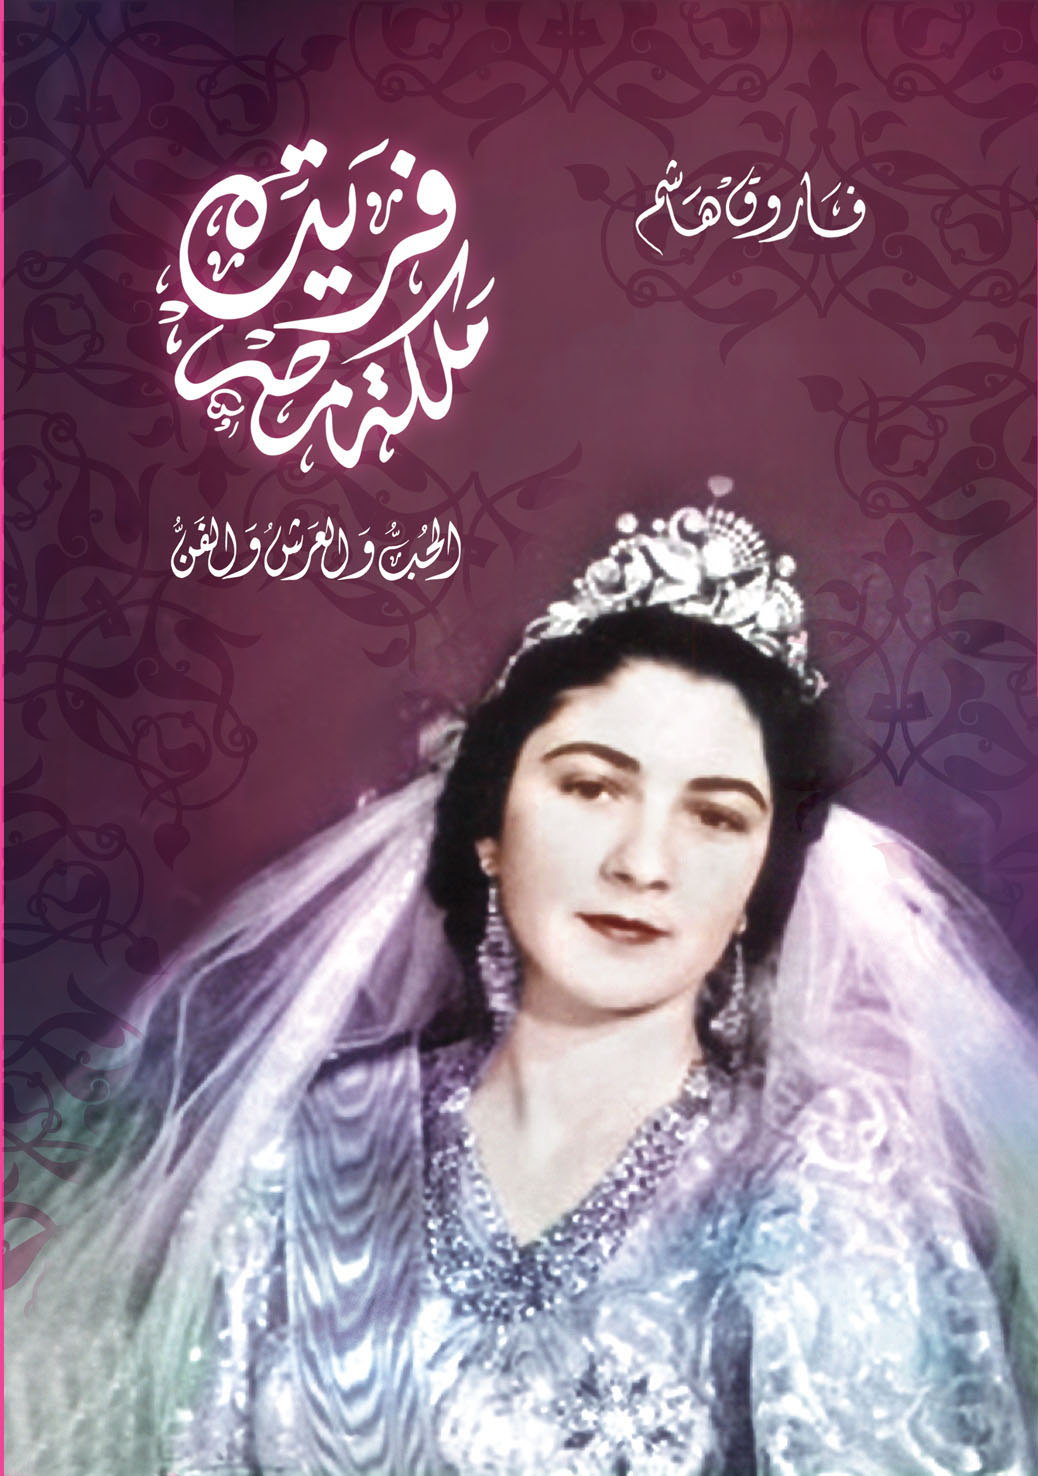 فريدة ملكة مصر - الحب والعرش والفن